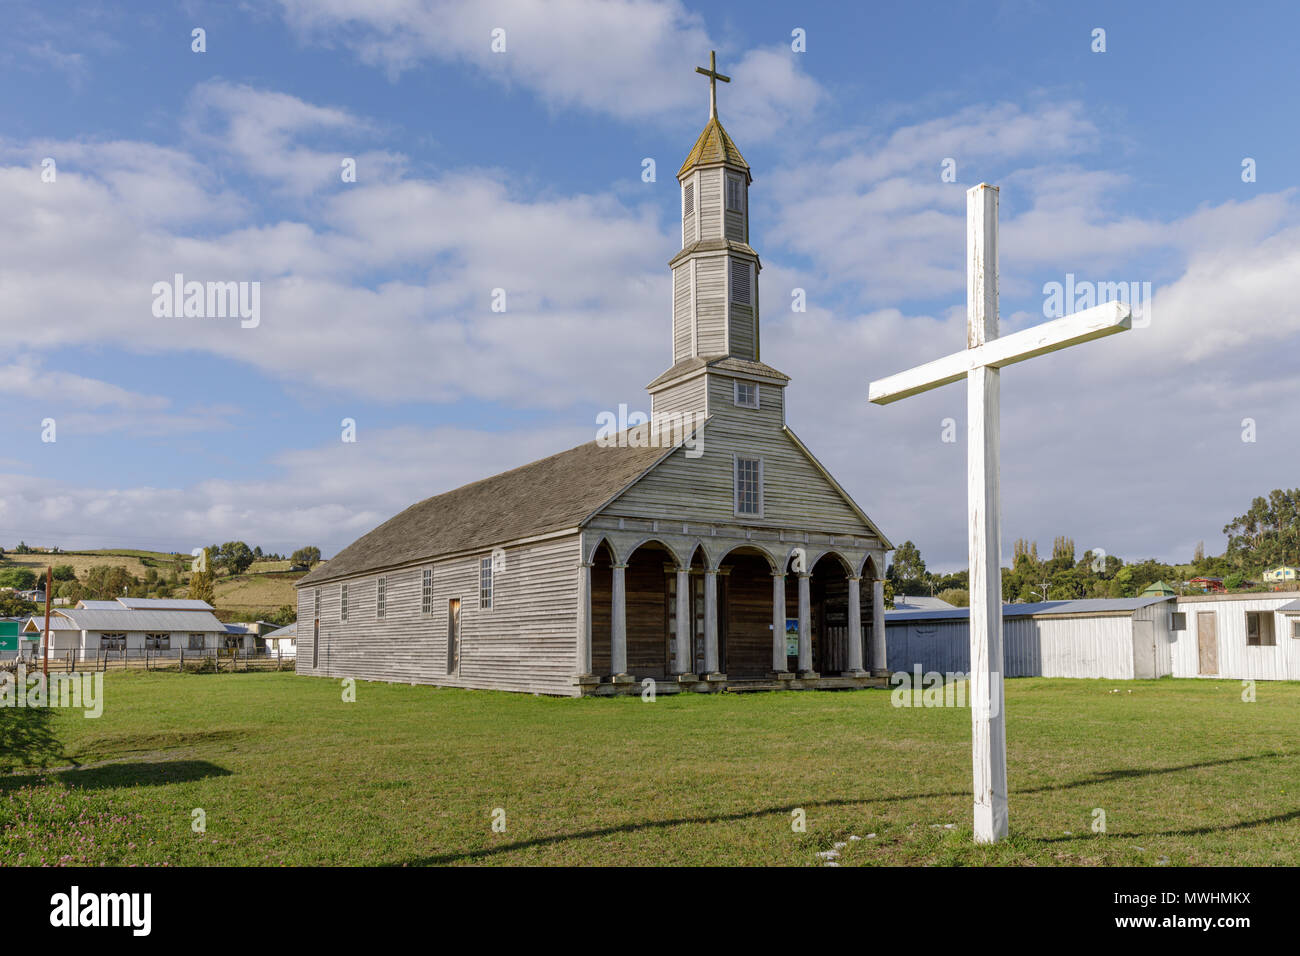 Chile: Jesus Nazareno Church is a Unesco World Heritage Site in Aldachildo, Lemuy Island, Chiloé archipelago. Stock Photo